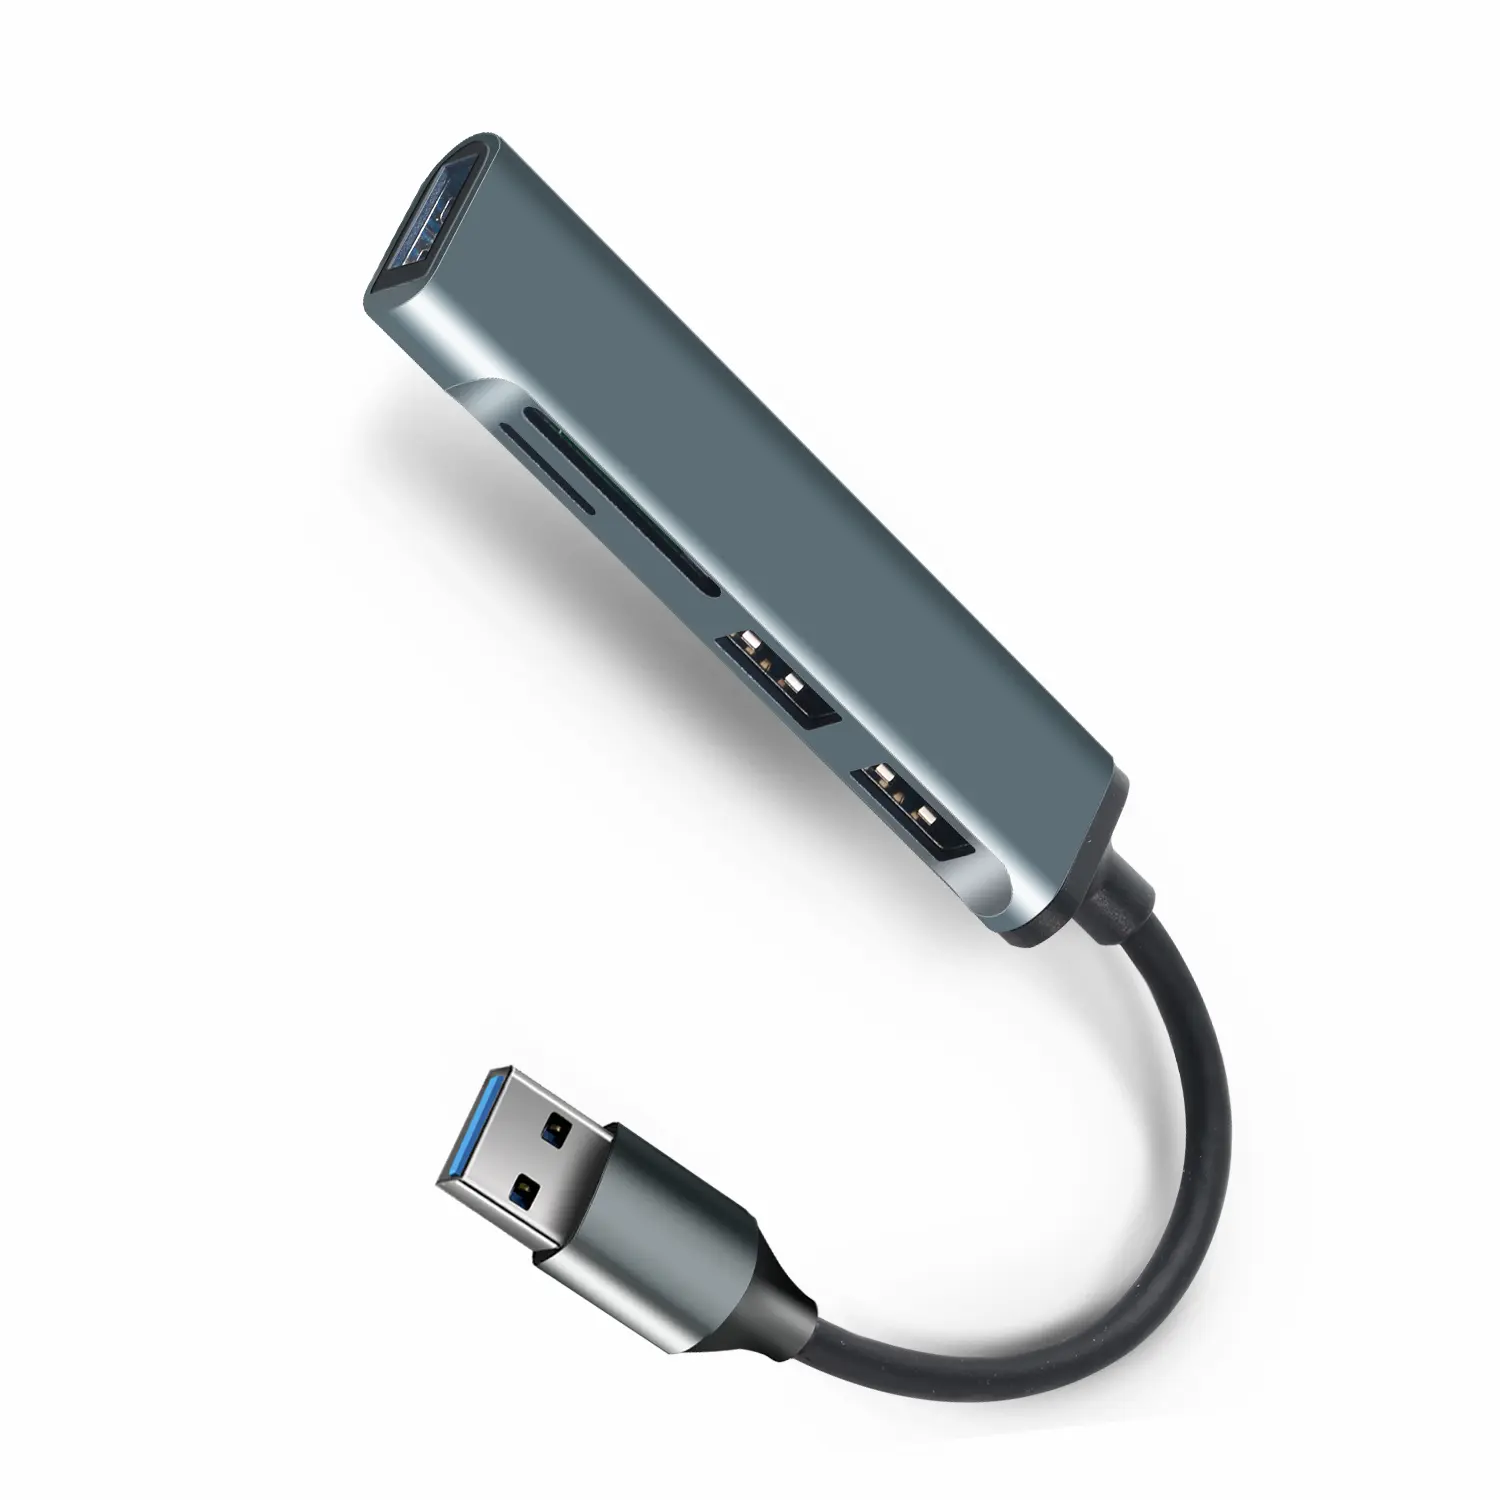 5 In 1 USB 3.0 허브 유형 C에 USB 5 포트 멀티 분배기 어댑터 OTG USB 허브 PC 컴퓨터 액세서리